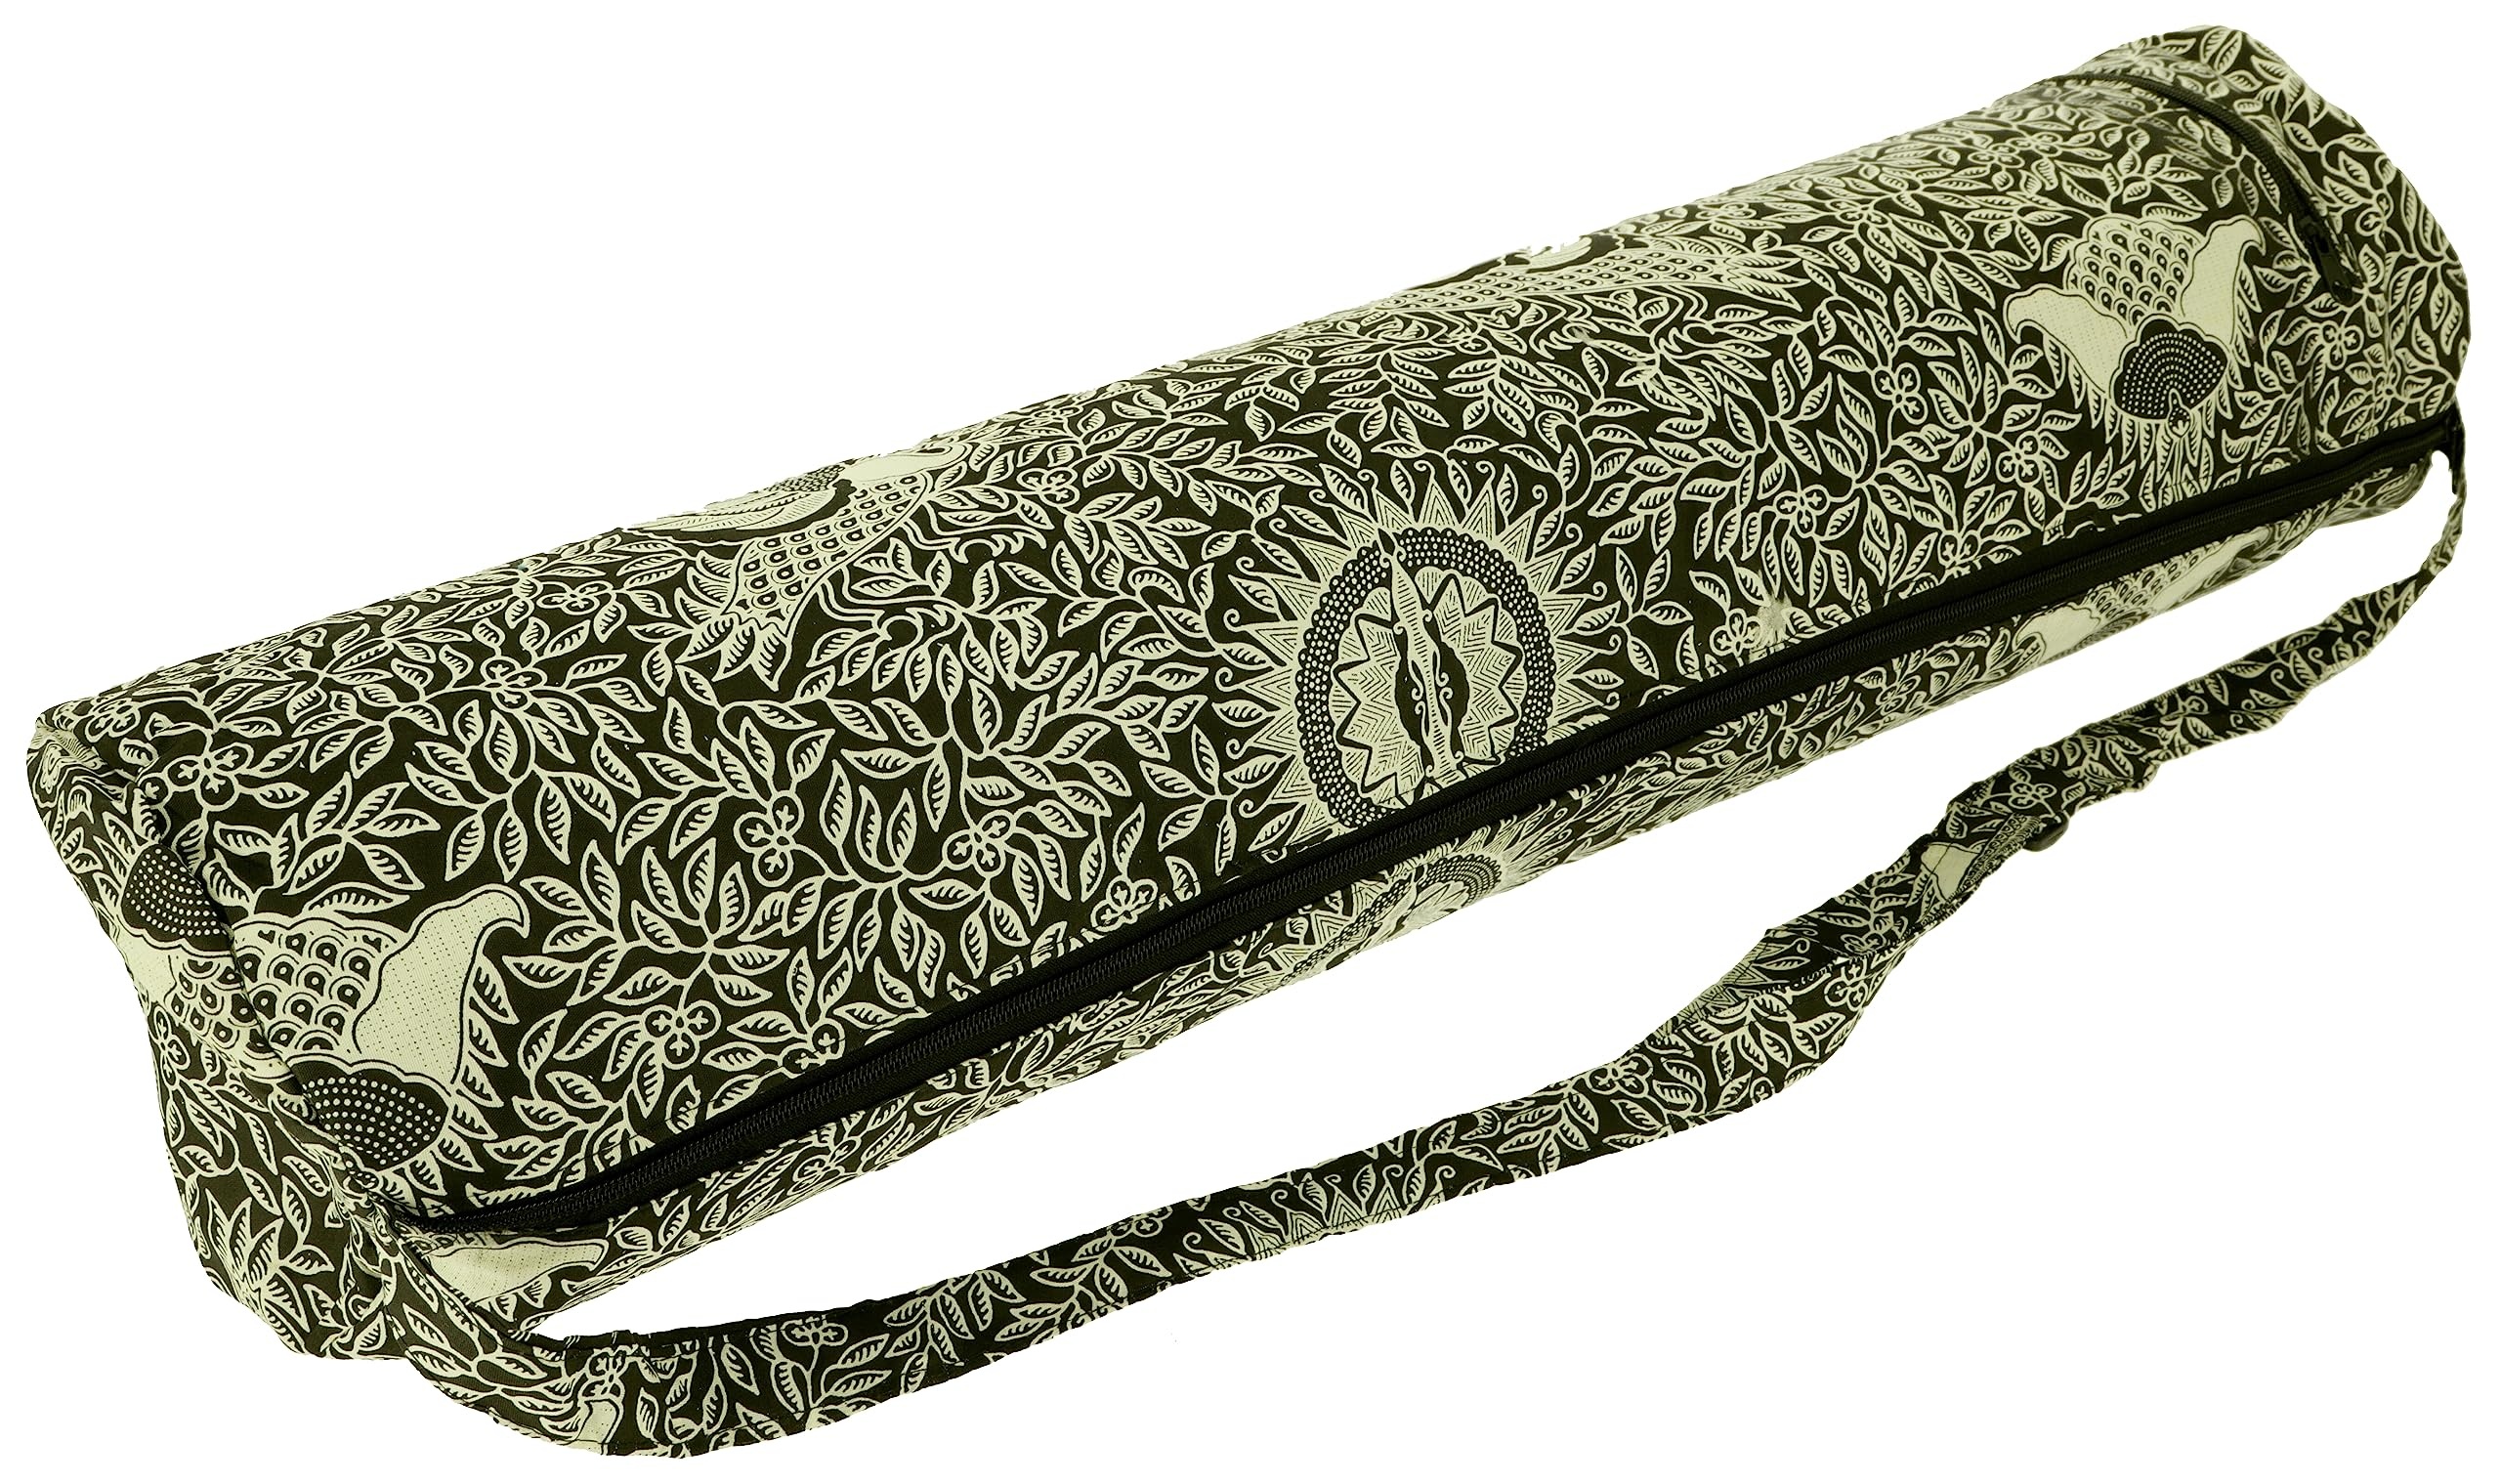 GURU SHOP Yogamatten-Tasche Indonesische Batik - Schwarz, Herren/Damen, Baumwolle, Size:One Size, 65x20x20 cm, Taschen für Yogamatten - Einheitsgröße